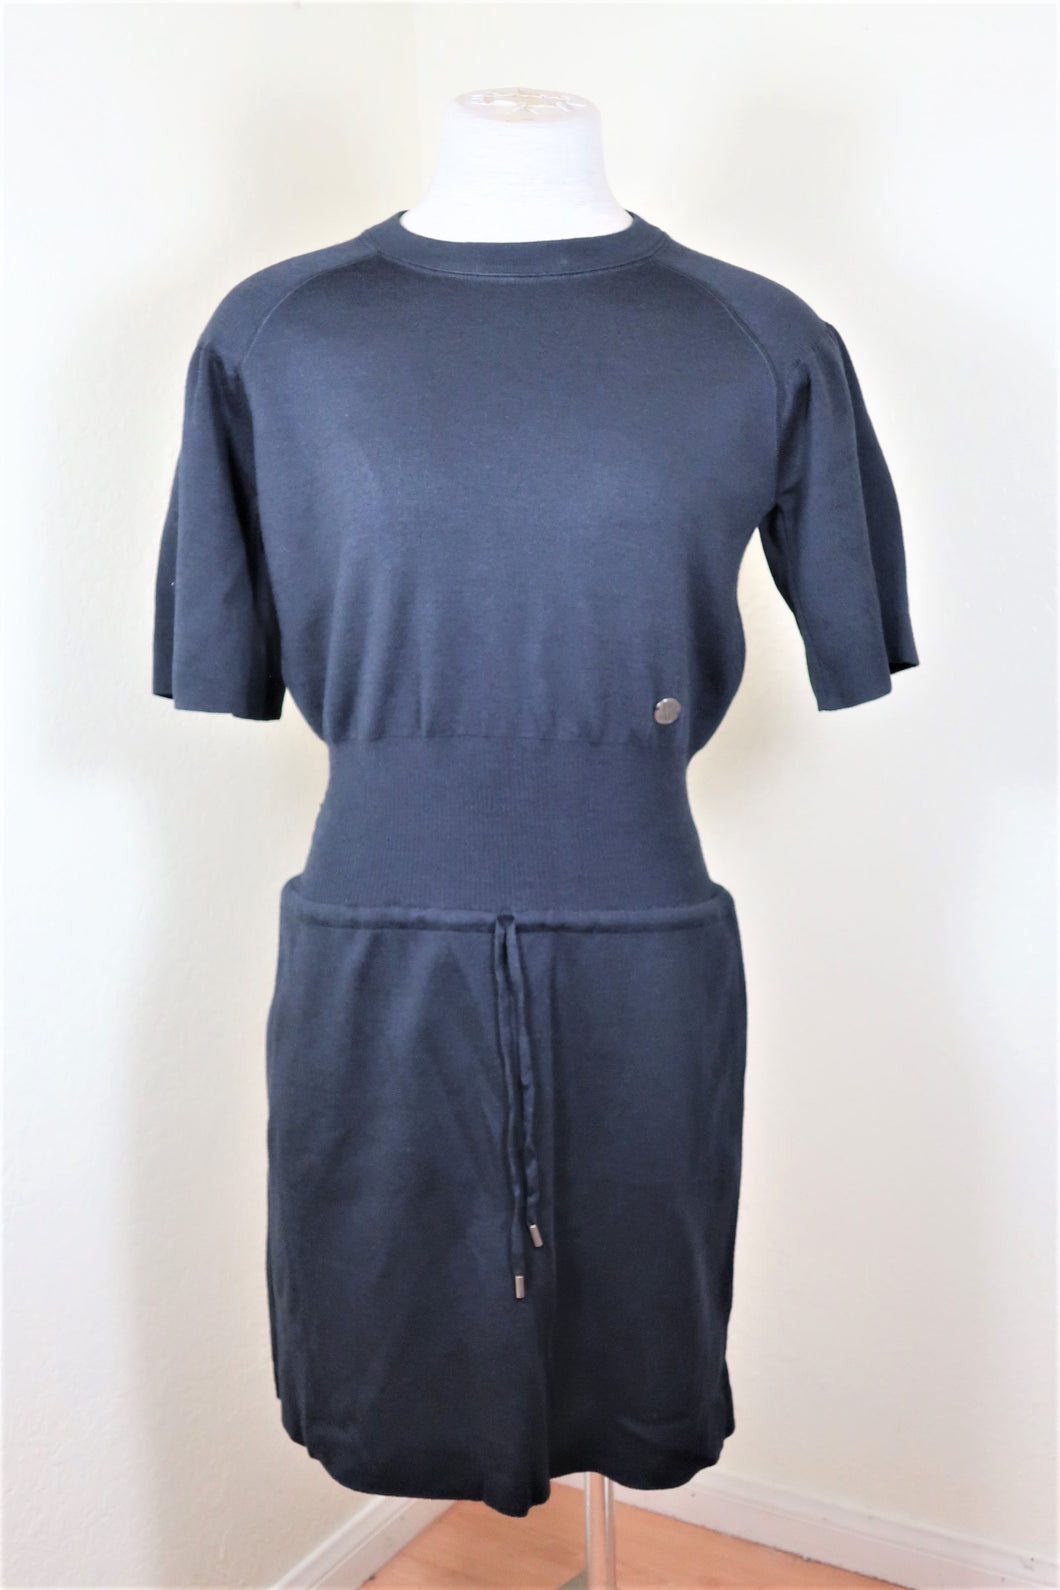 LOUIS VUITTON LV Deep Blue Wool Draw Waist Short Sleeves Classic Dress Sz 3 4 XS Extra Small